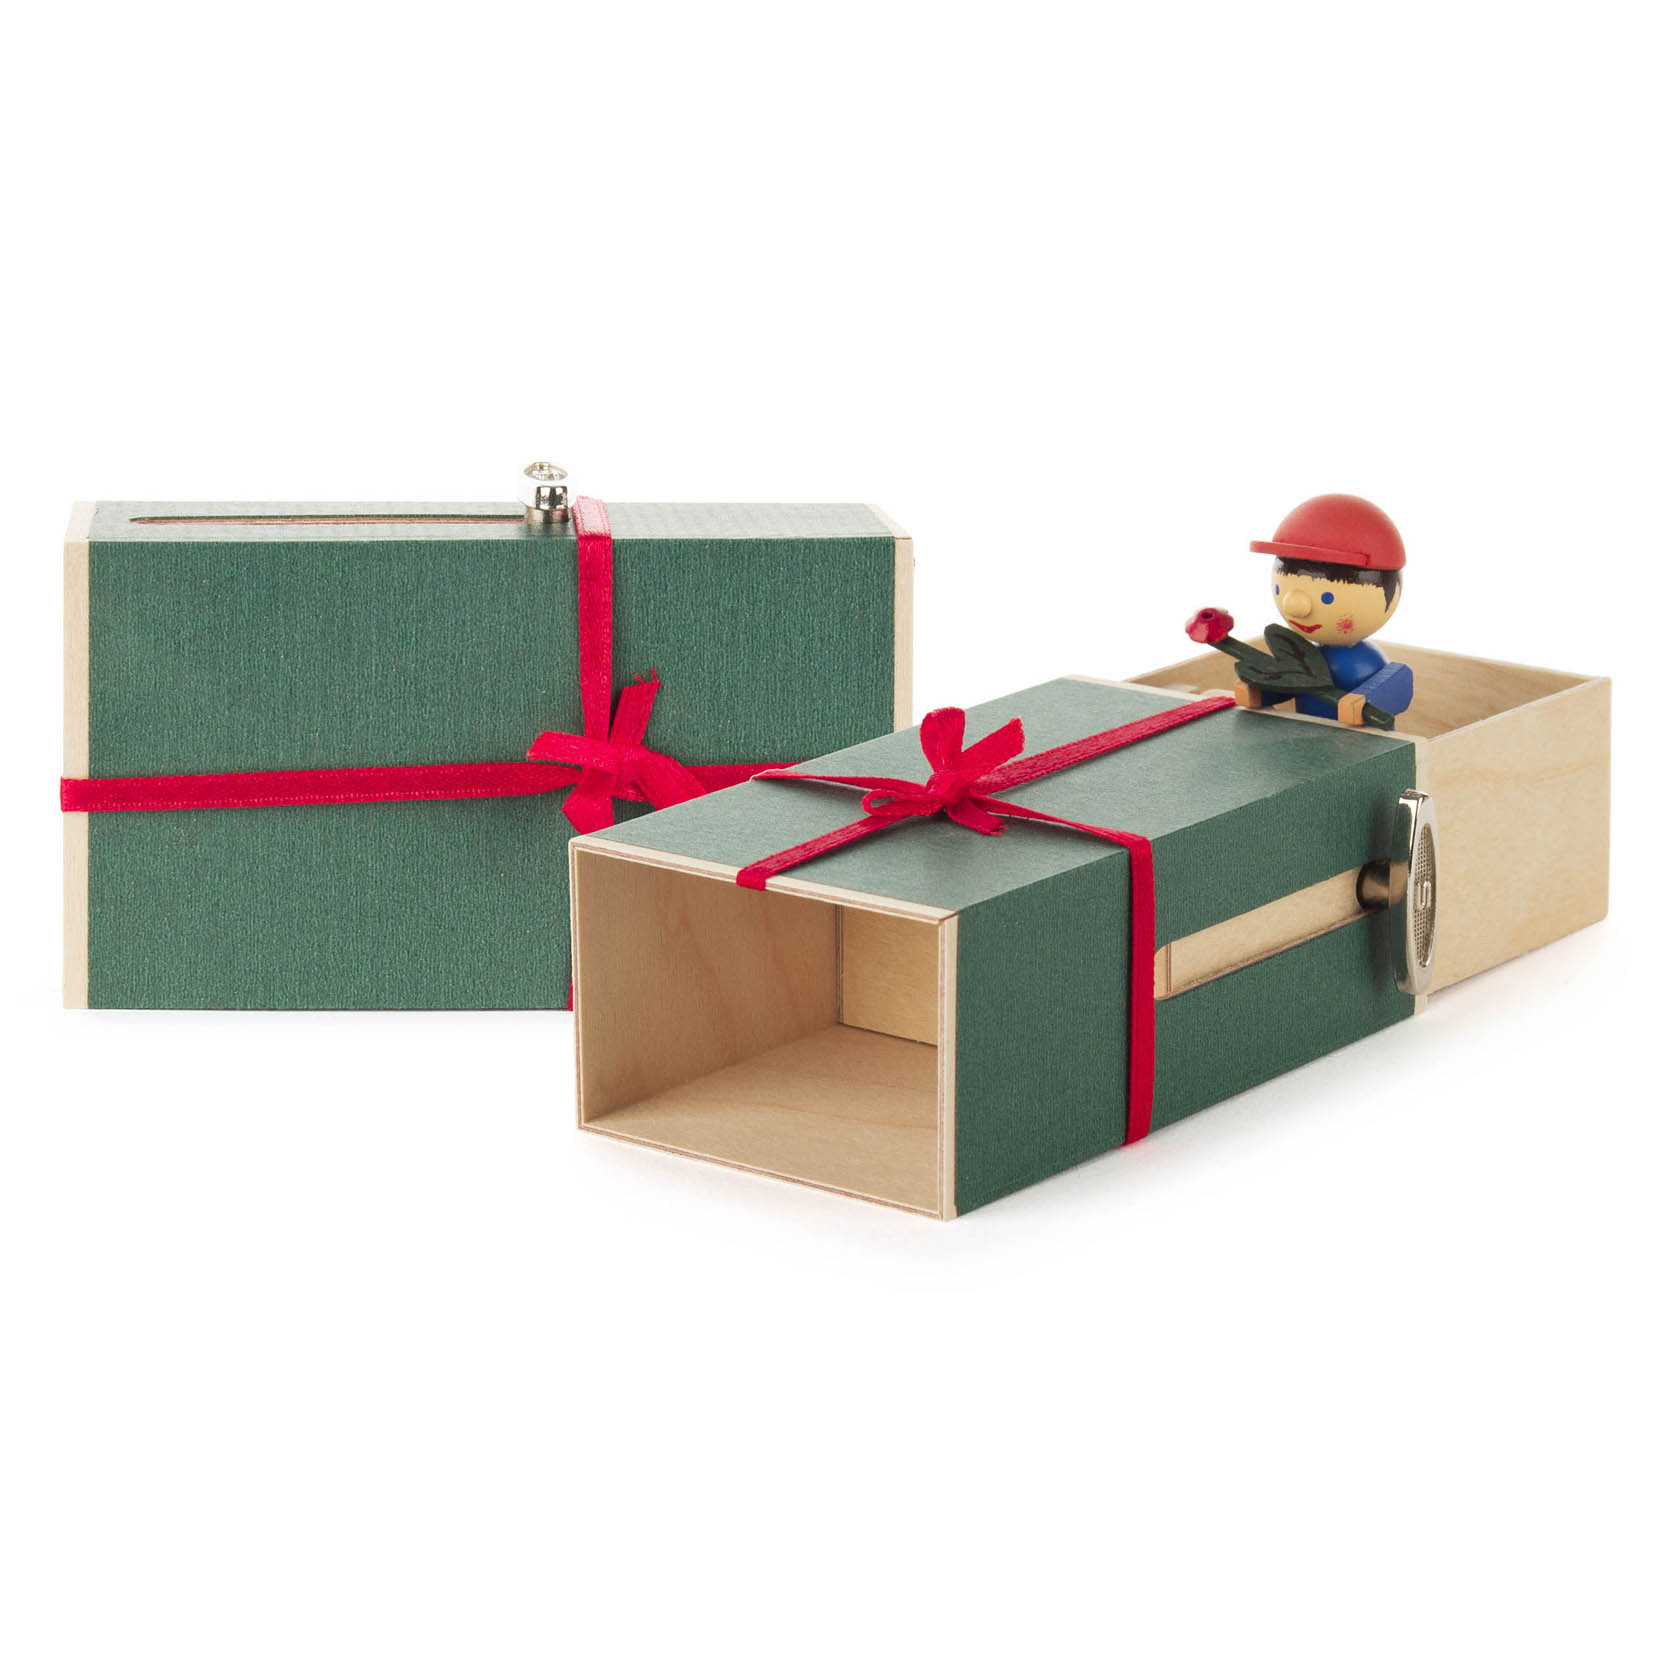 Schiebebox "Geschenke-Box" Junge mit Blume Melodie: It-s a small world im Dregeno Online Shop günstig kaufen